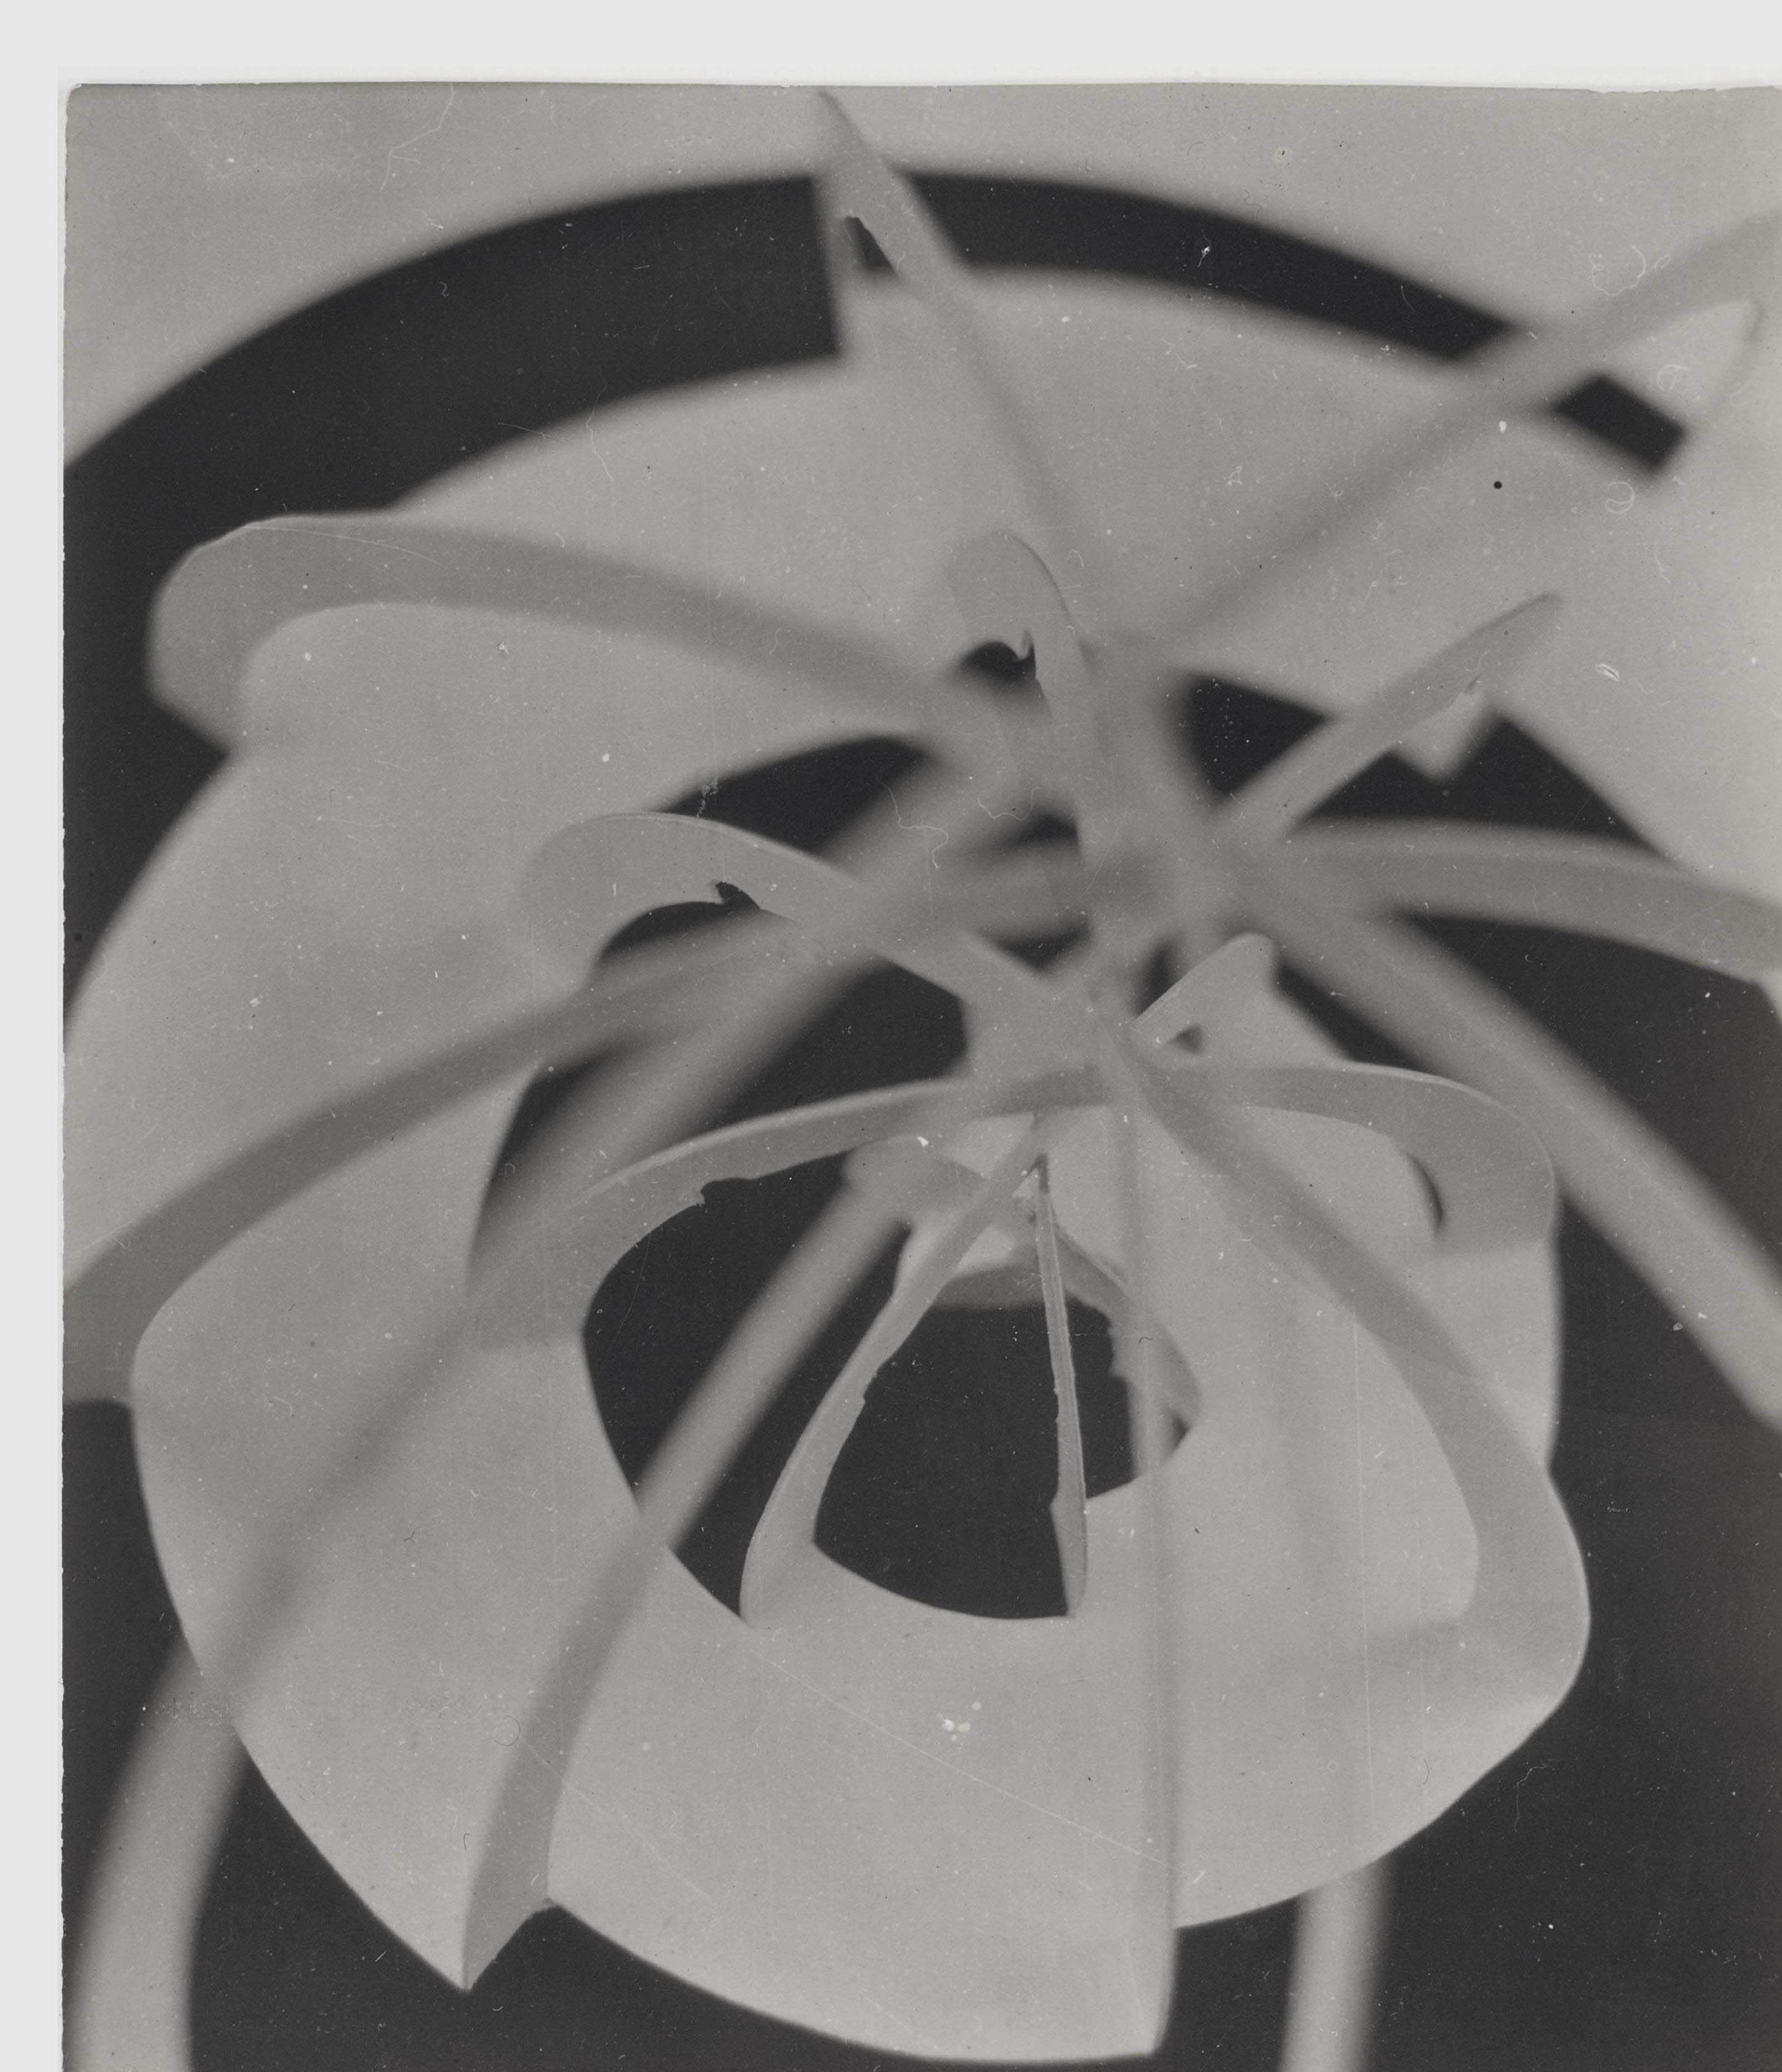 Papierübung Sharon, Bauhaus, Dessau, 1926